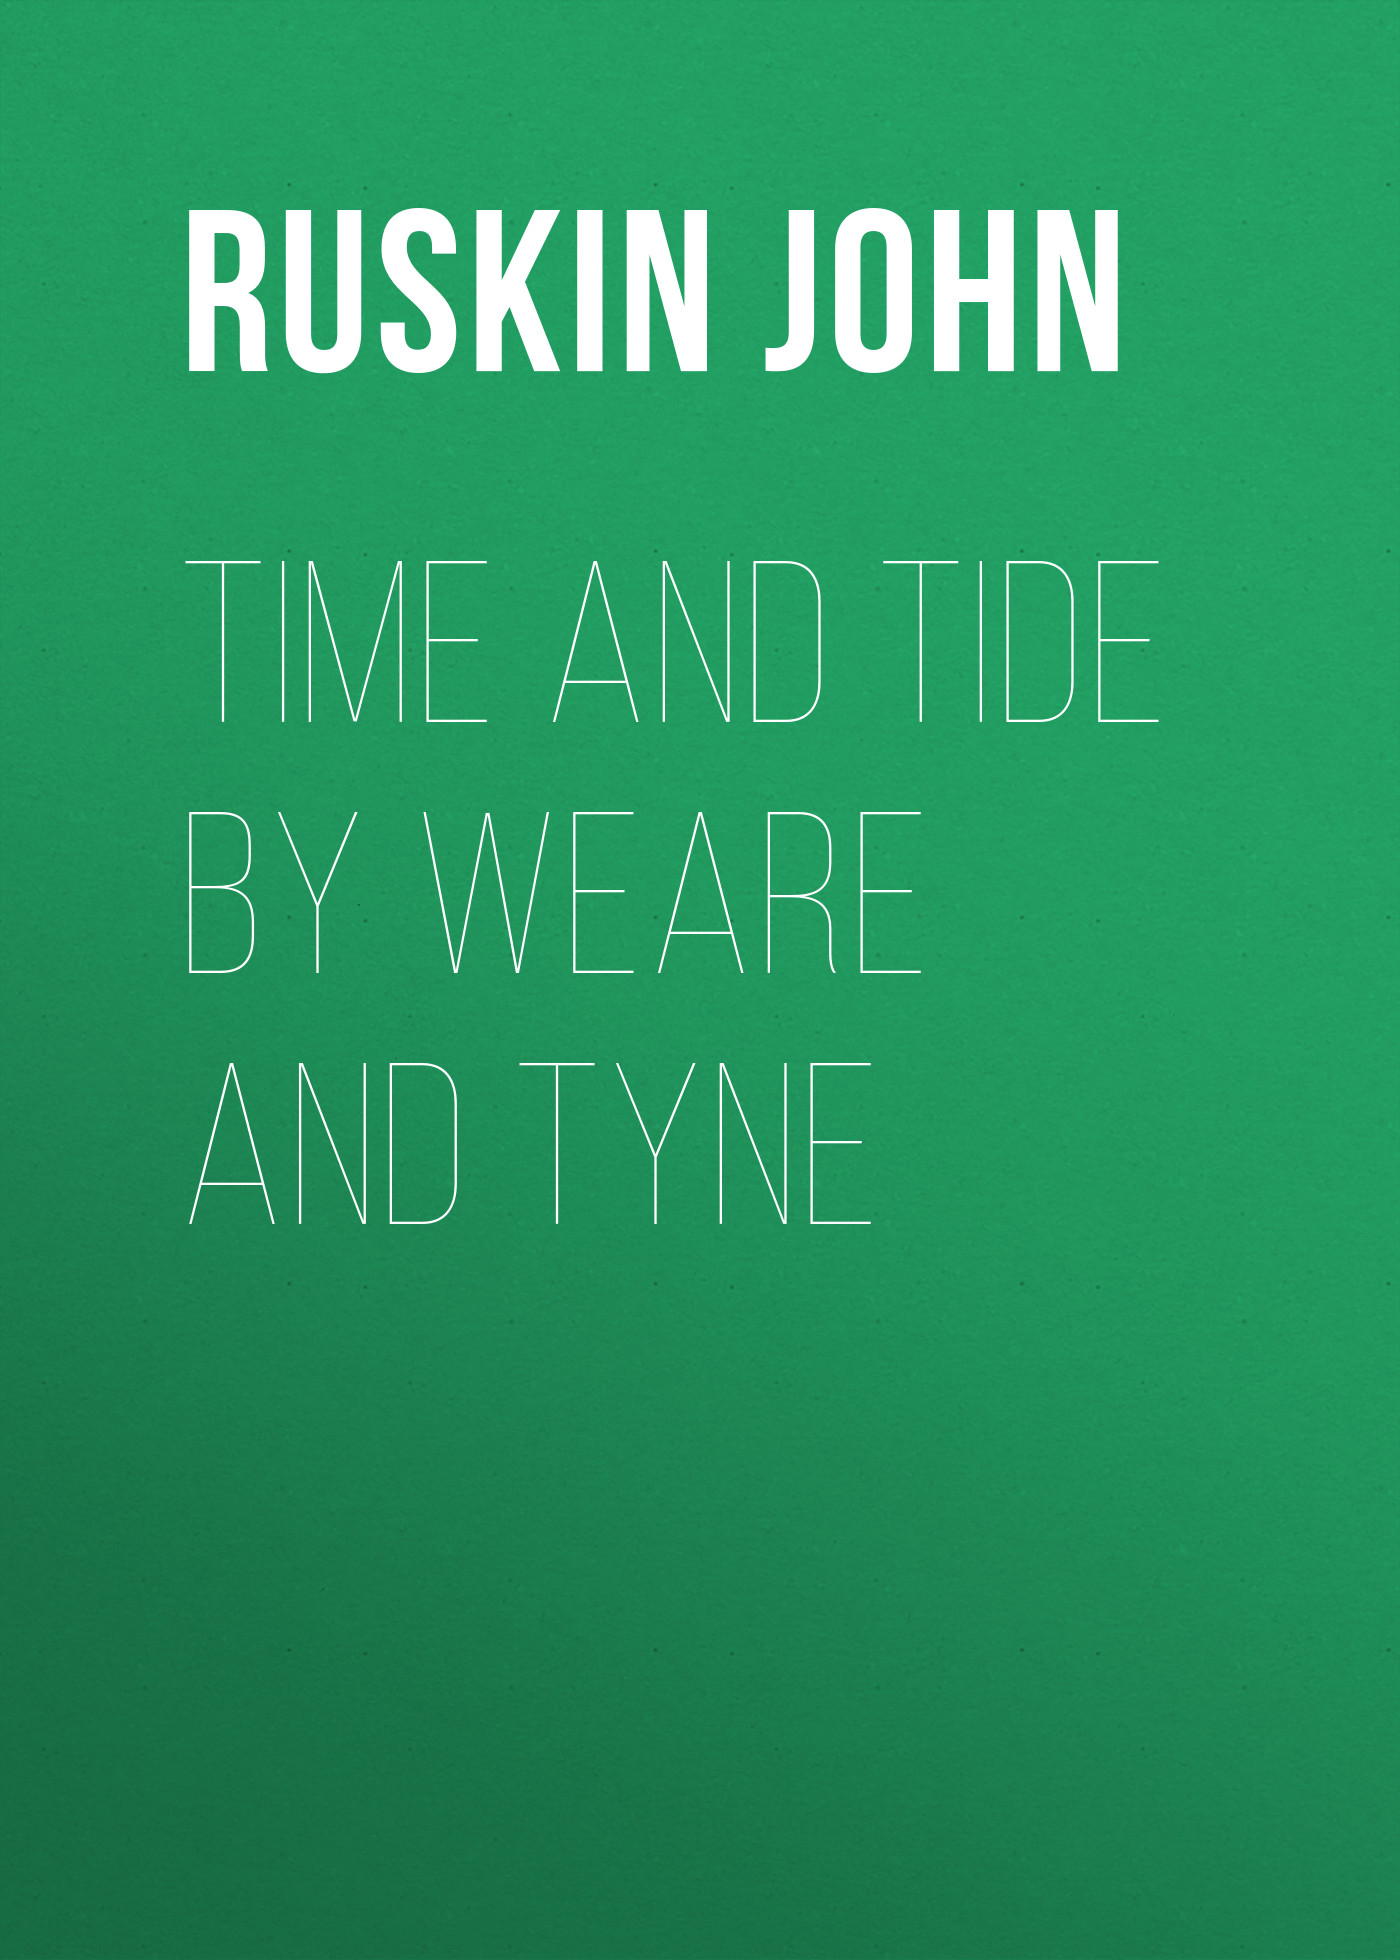 Книга Time and Tide by Weare and Tyne из серии , созданная John Ruskin, может относится к жанру Зарубежная классика, Литература 19 века, Зарубежная старинная литература. Стоимость электронной книги Time and Tide by Weare and Tyne с идентификатором 34838270 составляет 0 руб.